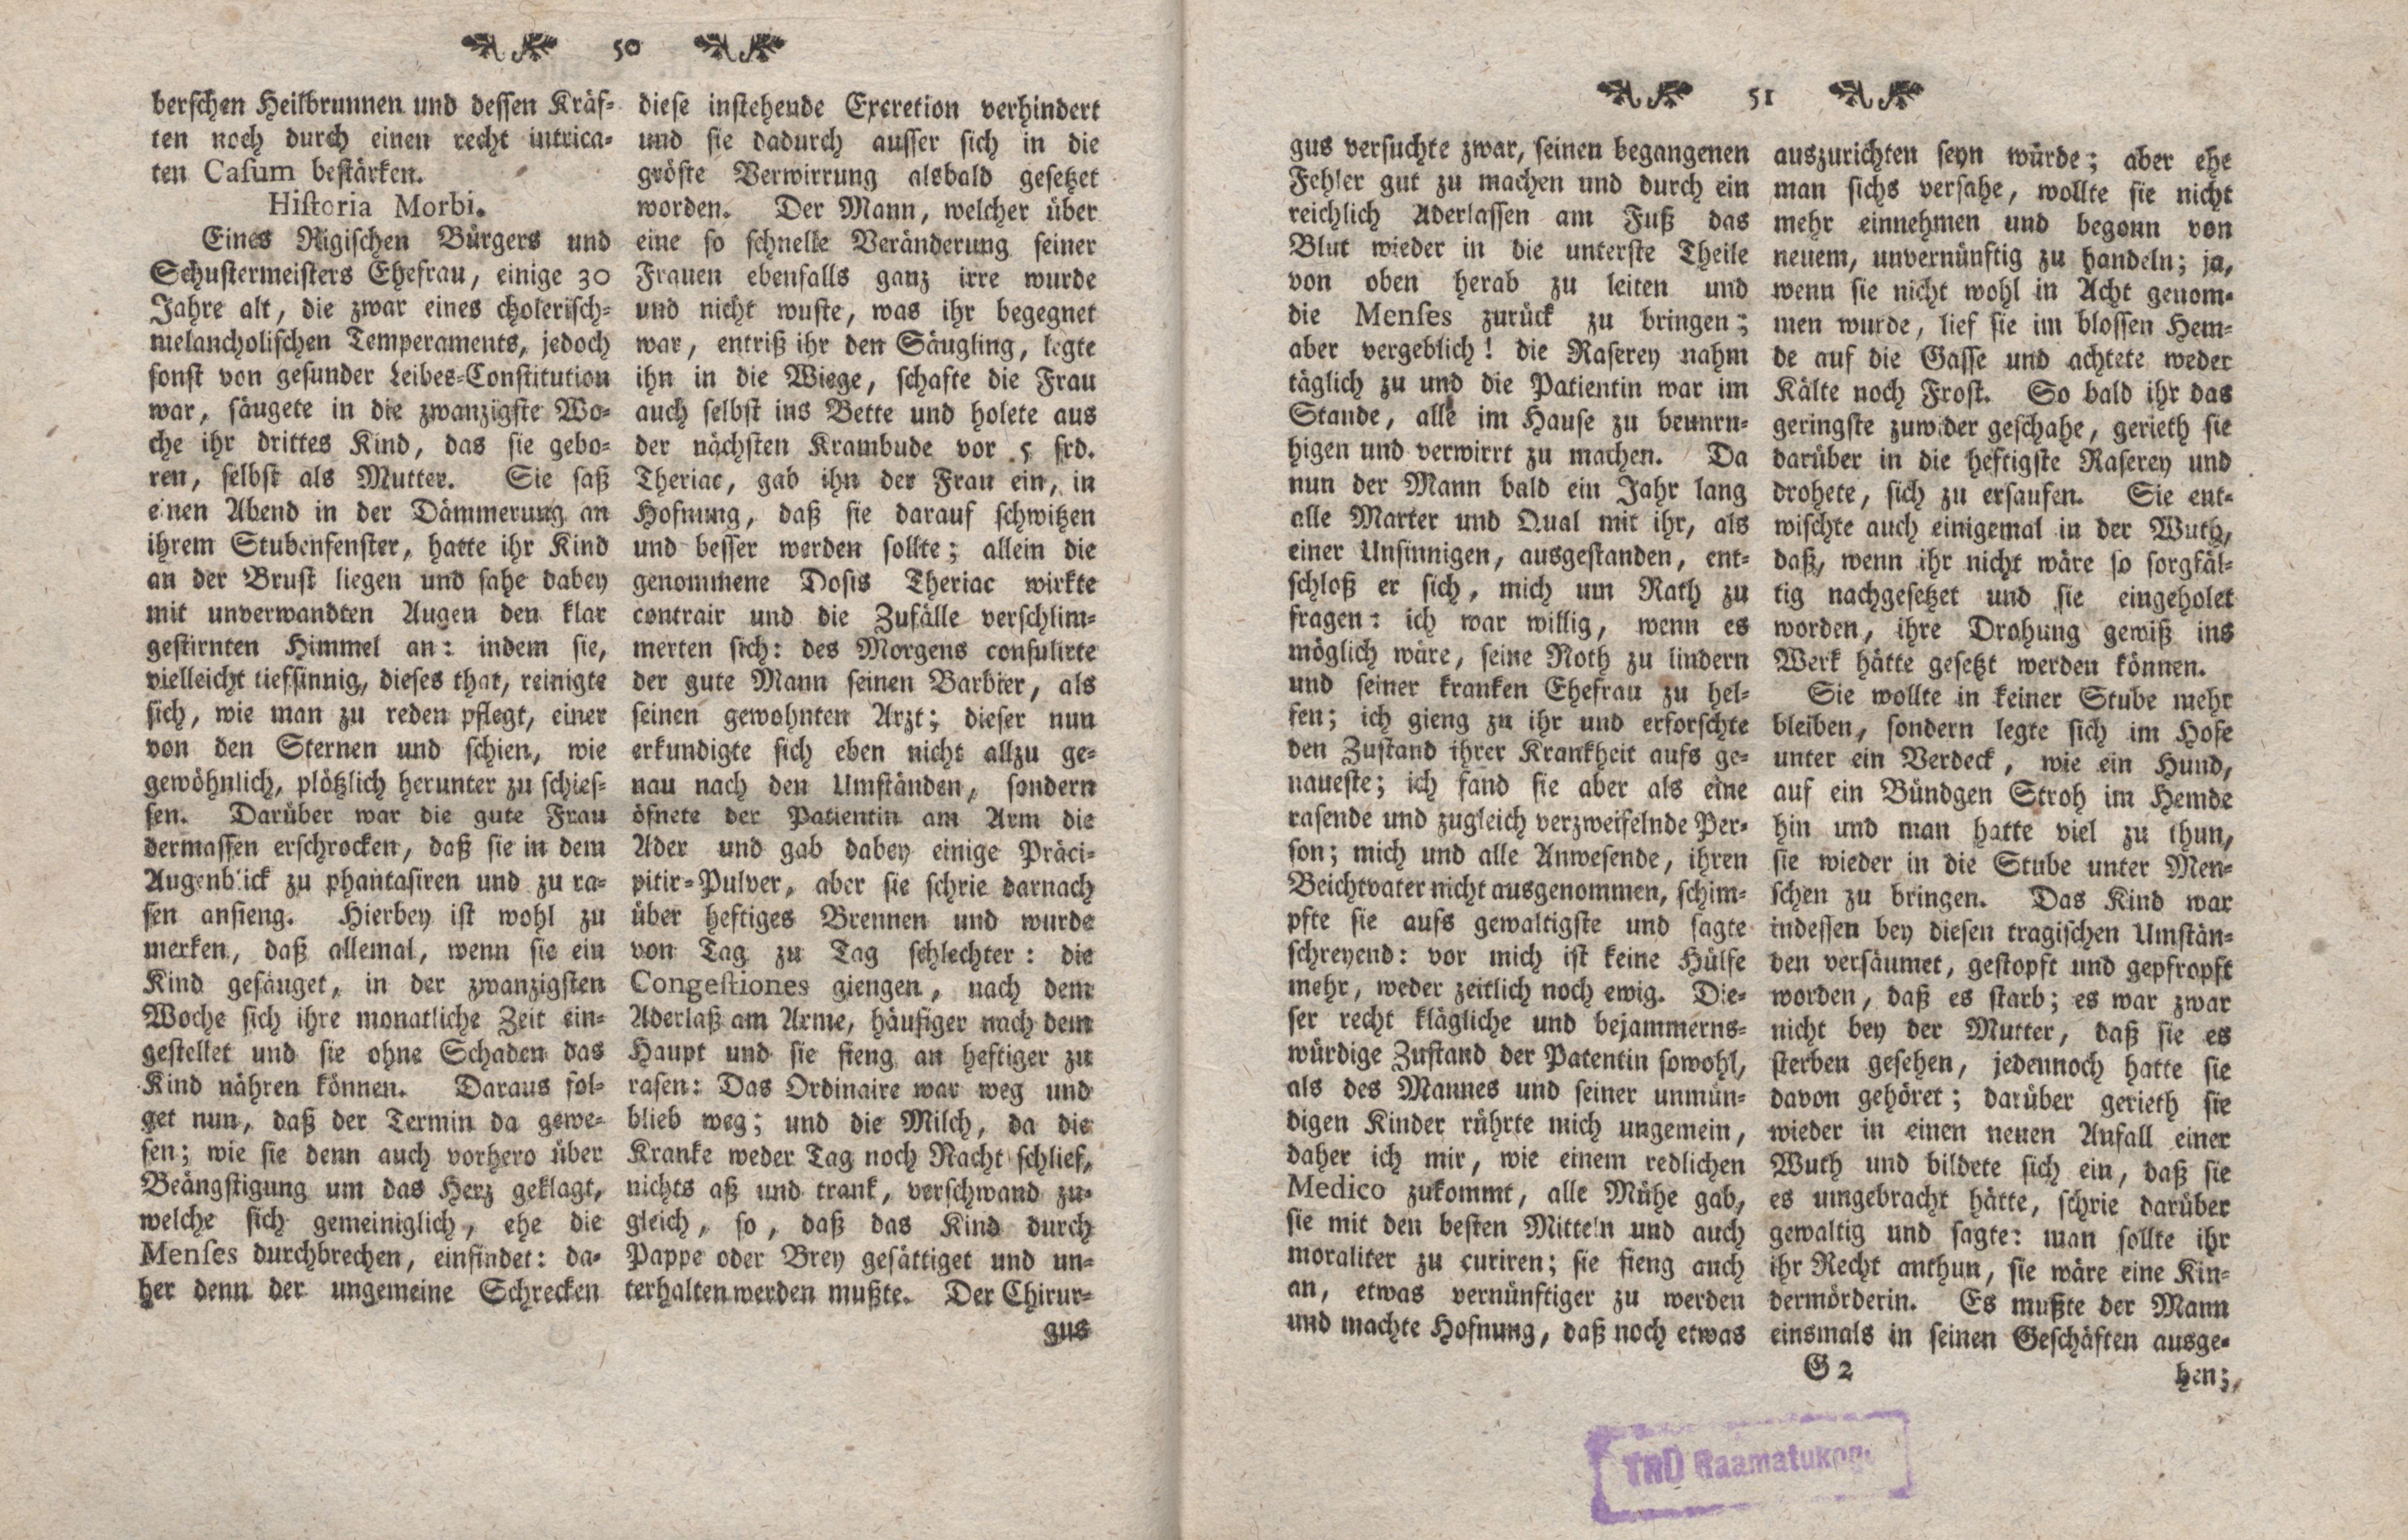 Gelehrte Beyträge zu den Rigischen Anzeigen 1761 (1761) | 26. (50-51) Main body of text